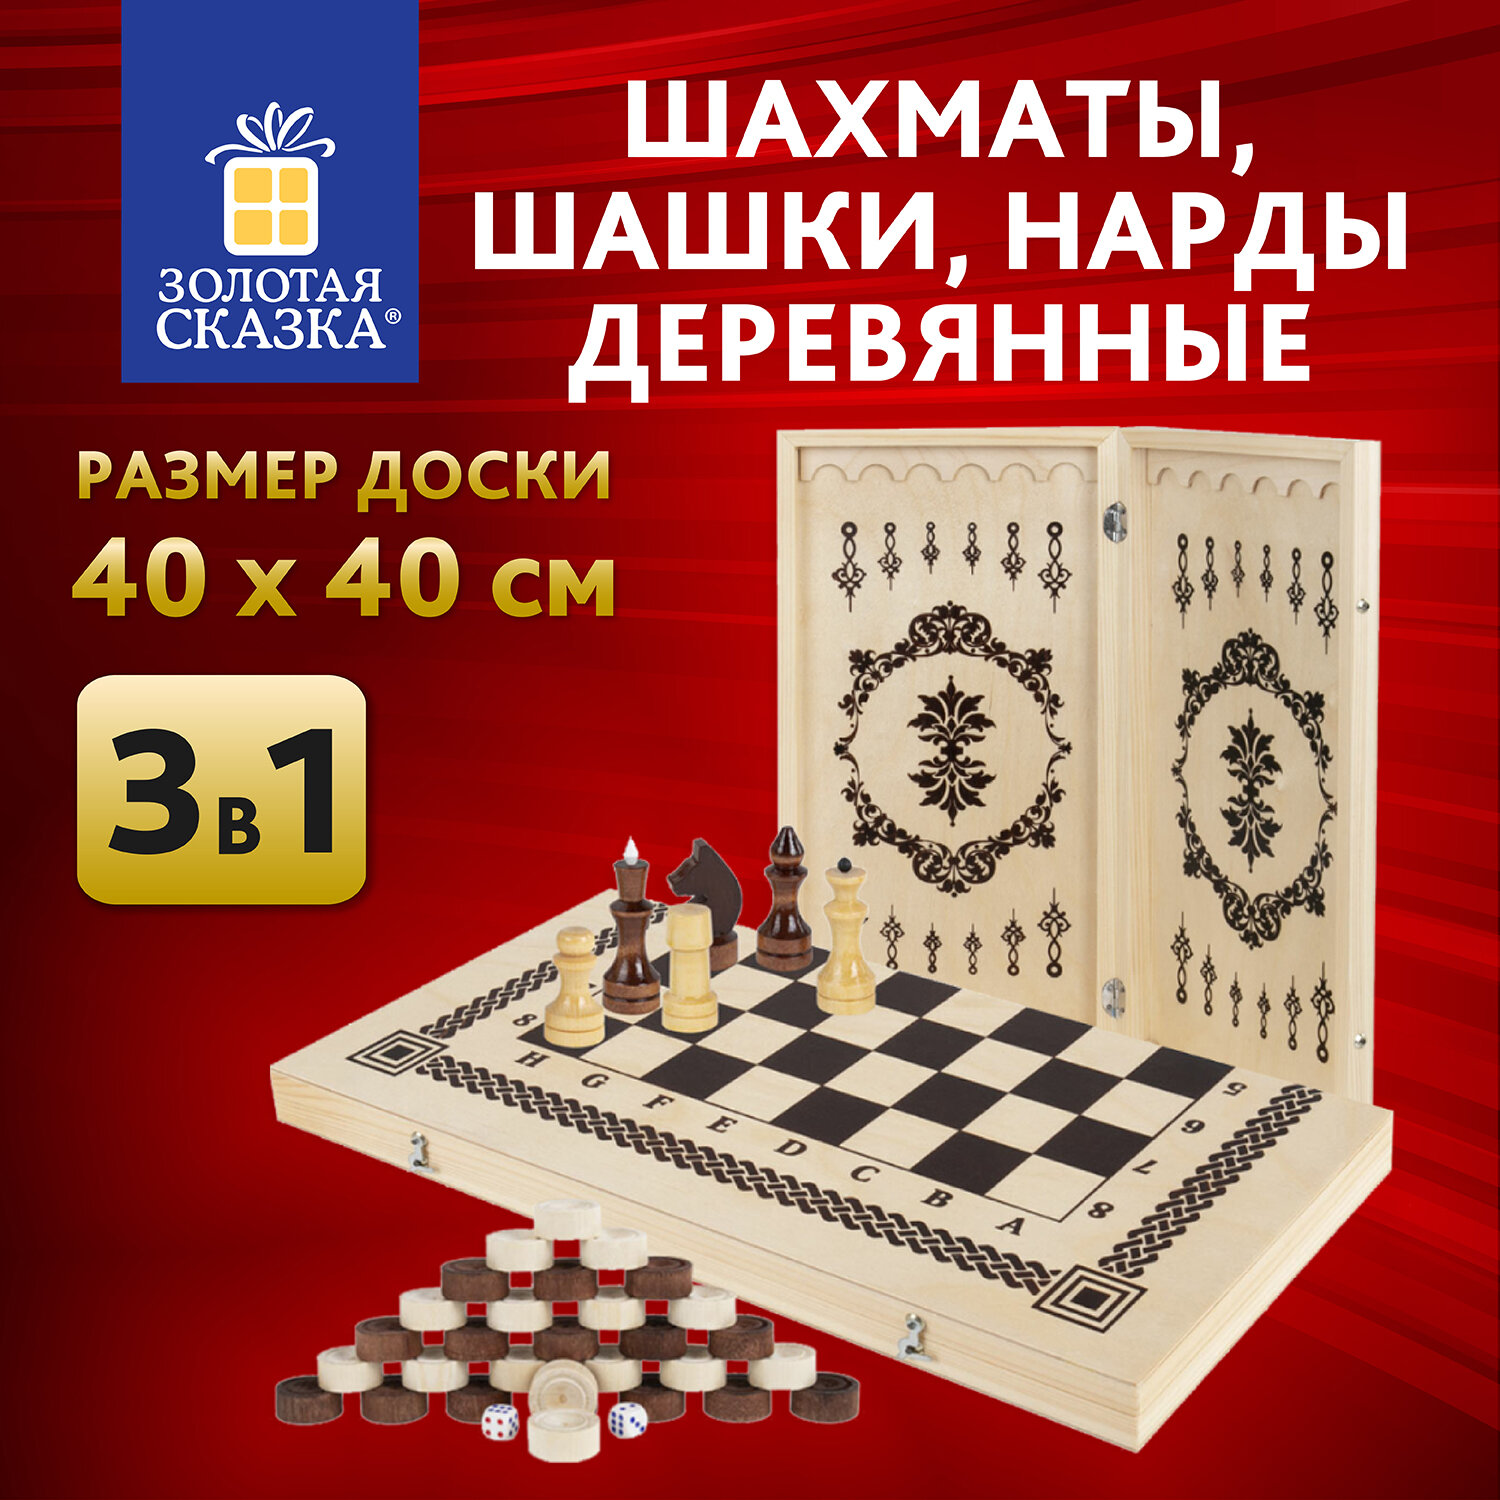 Шахматы Золотая сказка,665364,деревянные, 40х40 см 3в1 шашки, Нарды,подарочный набор